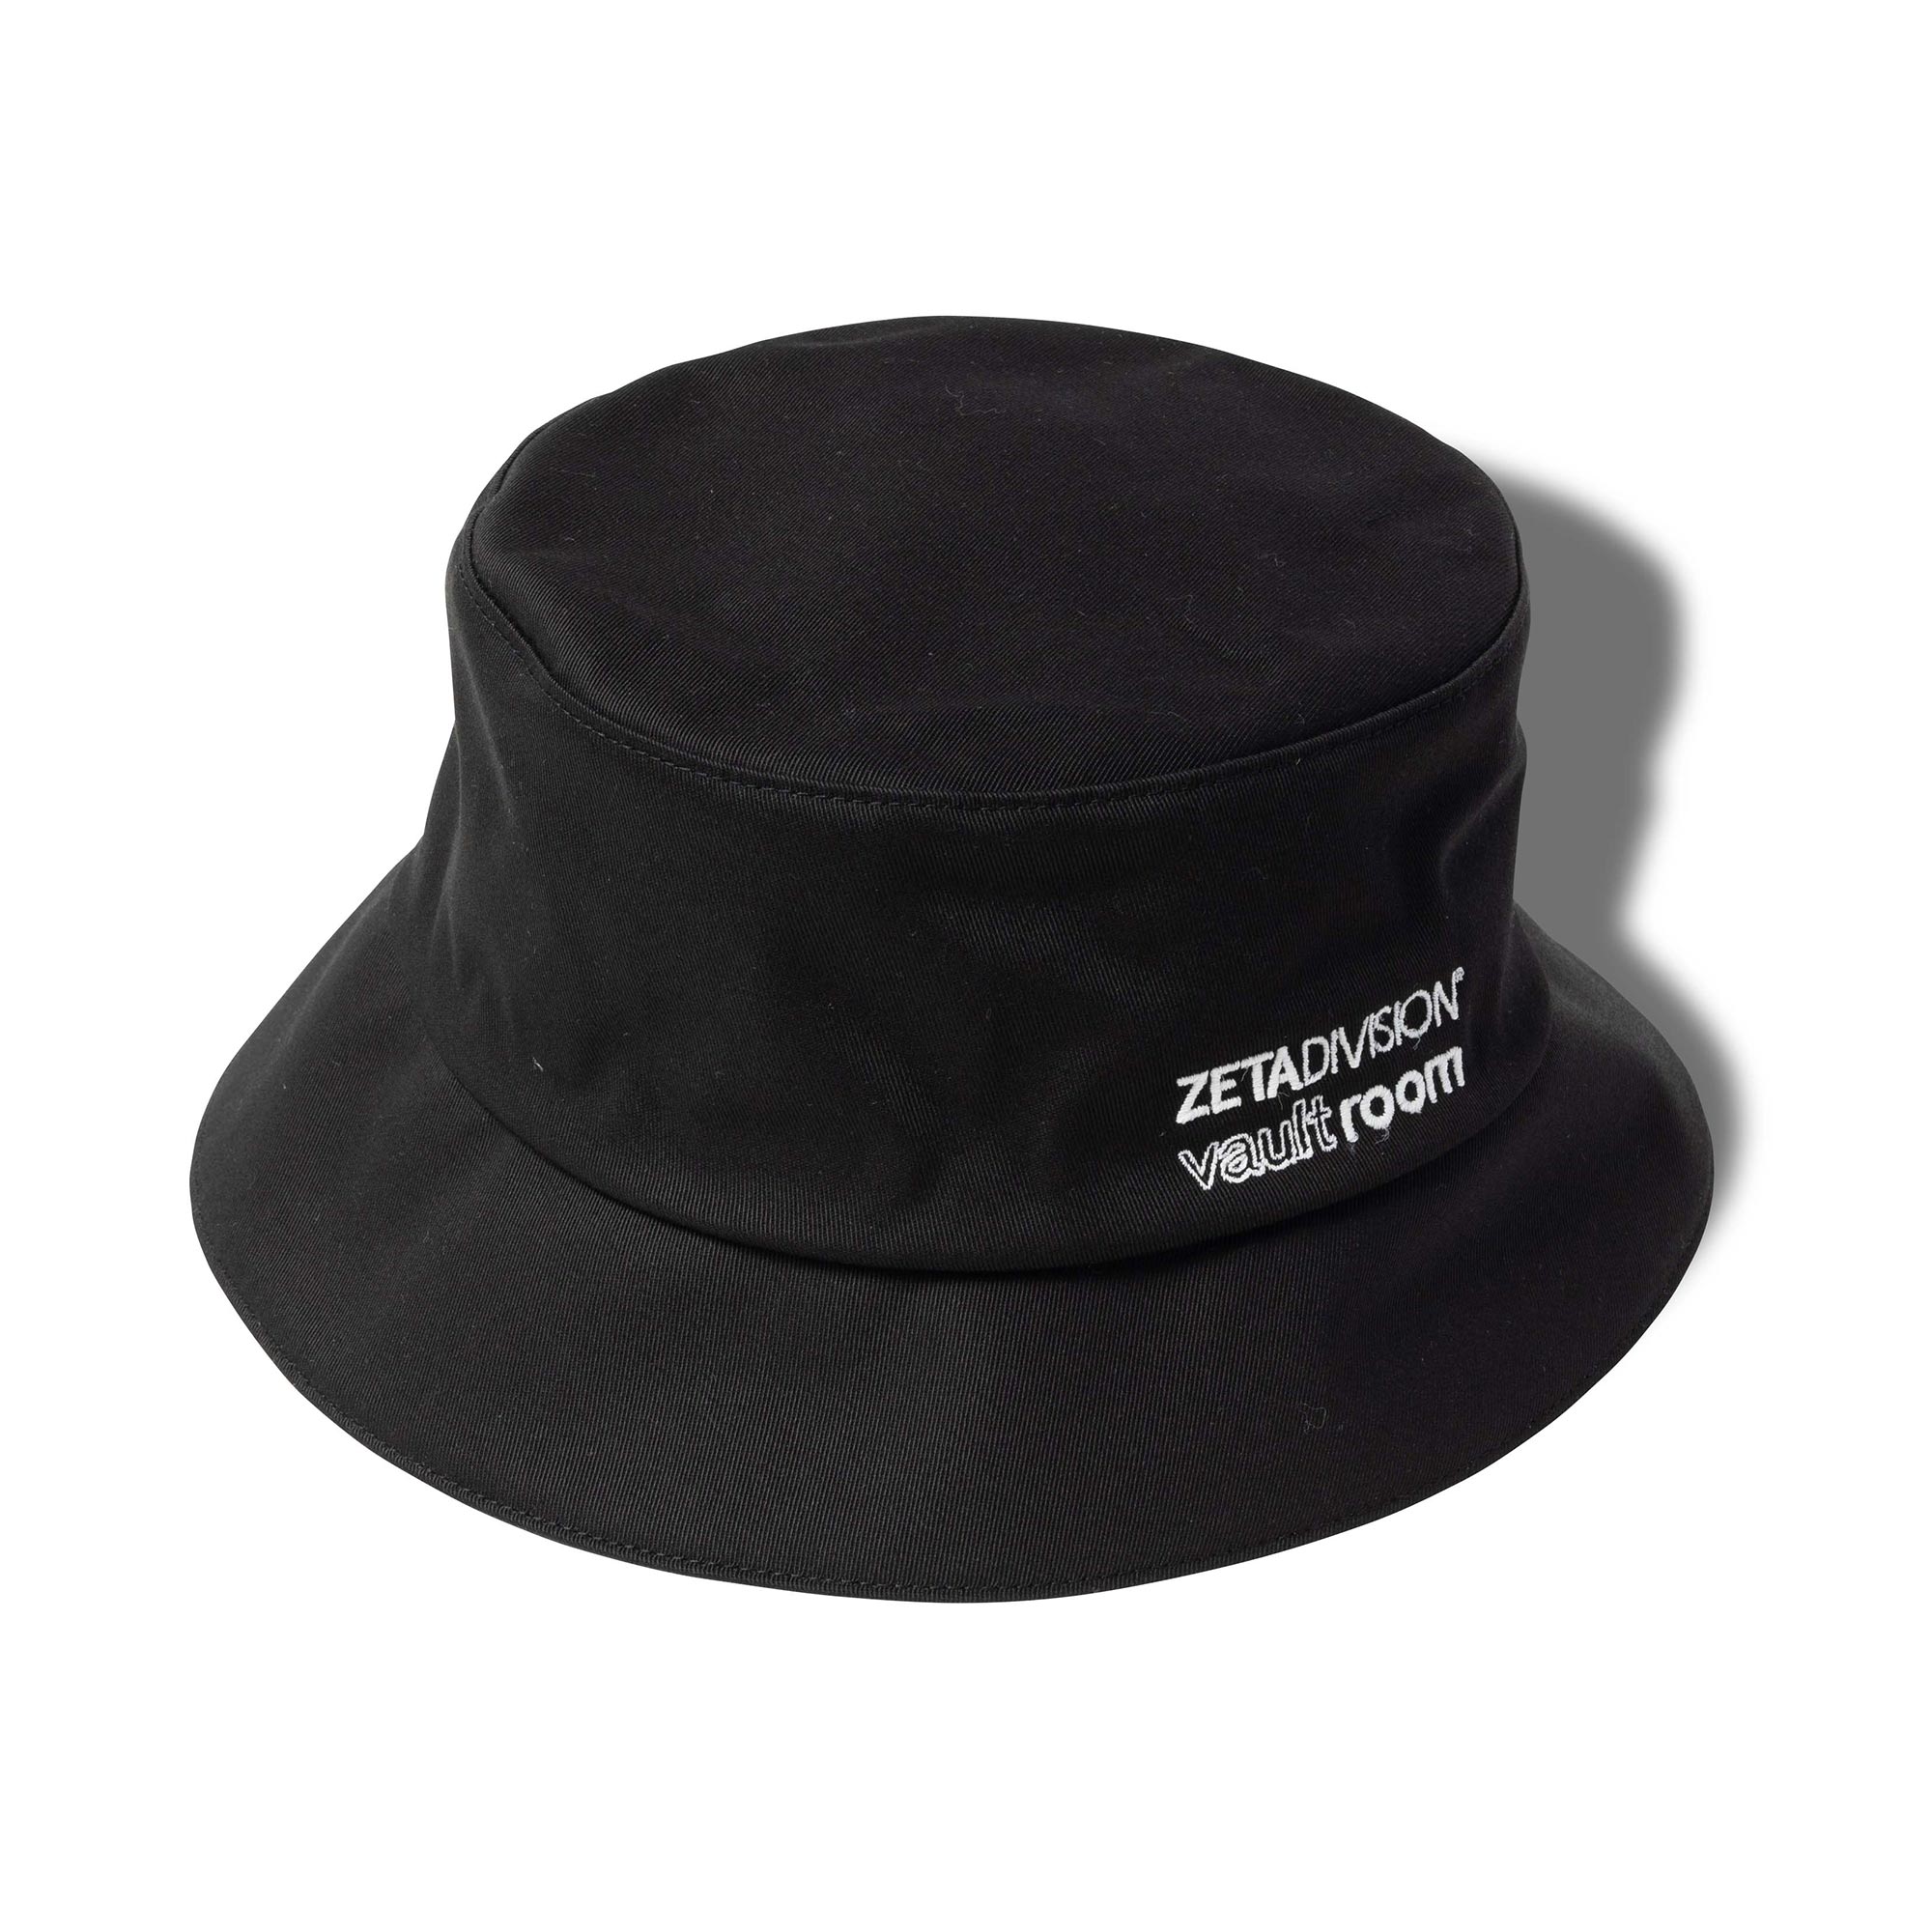 ZETA division コラボハット - 帽子